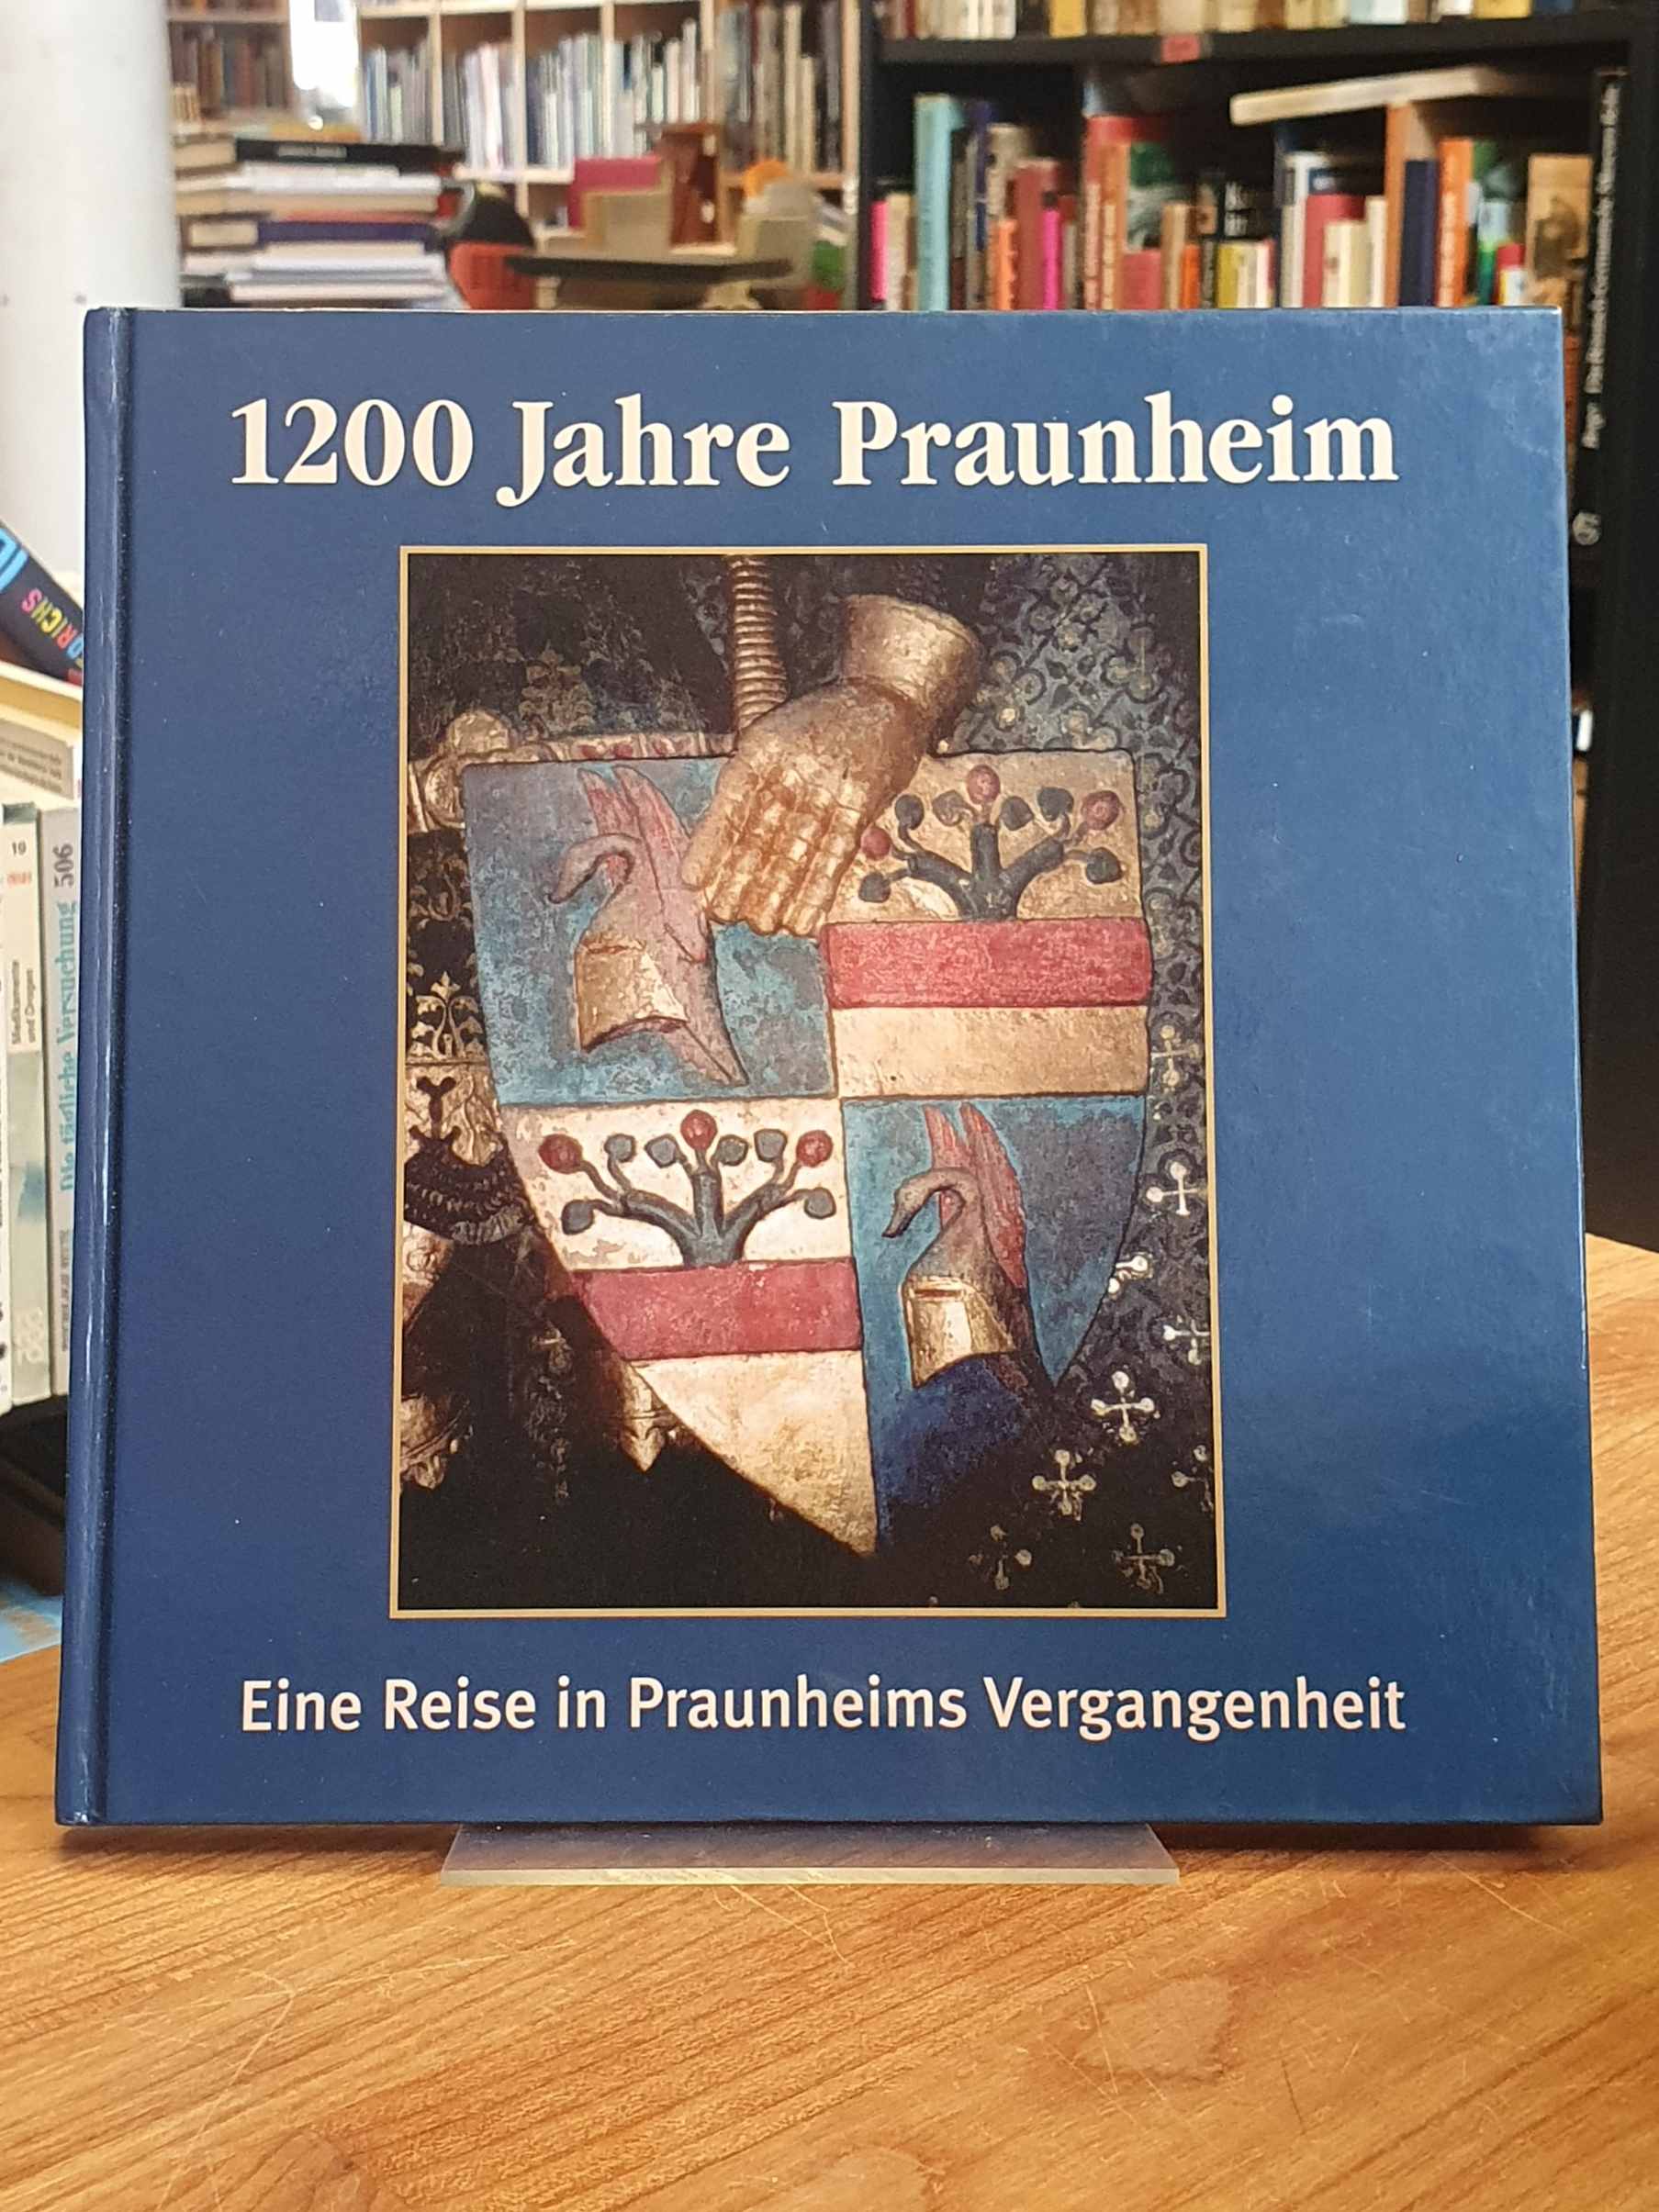 1200 Jahre Praunheim - 804 - 2004 - Eine Reise in Praunheims Vergangenheit - Festschrift, - Praunheim / Alfred Hansmann,